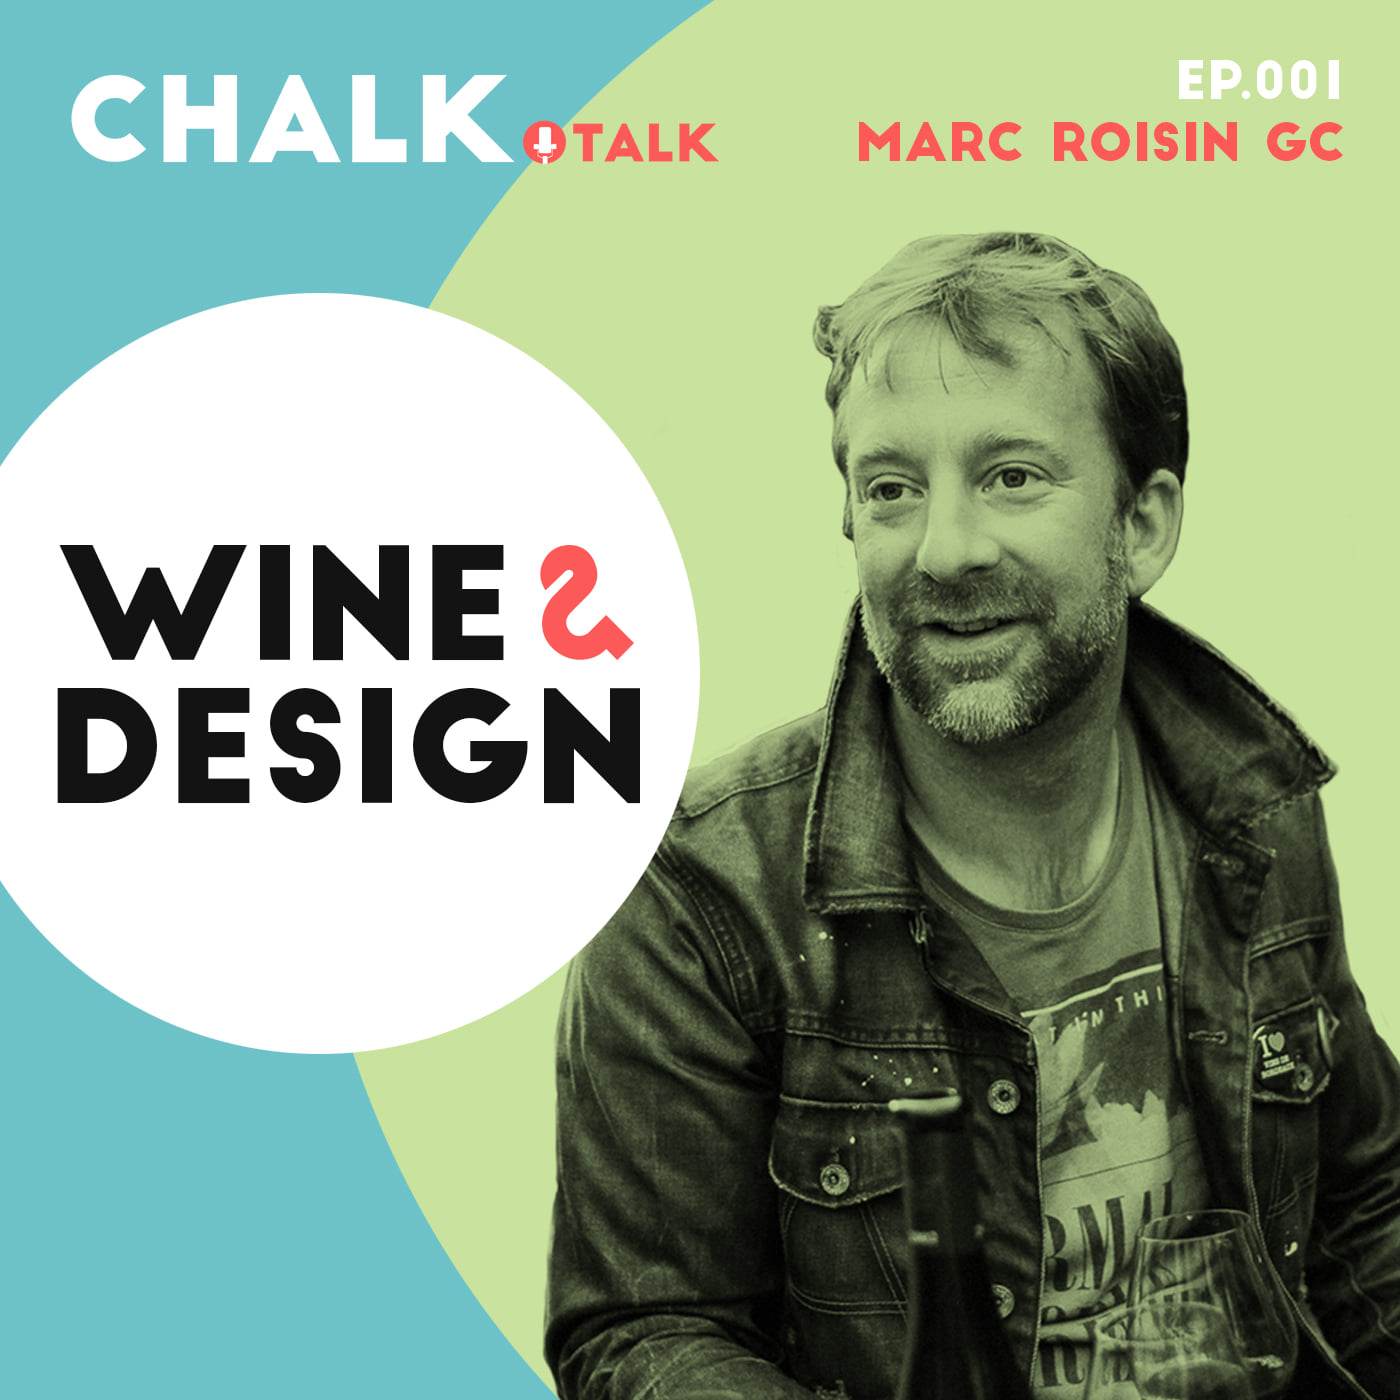 Chalk Talk Episode 1